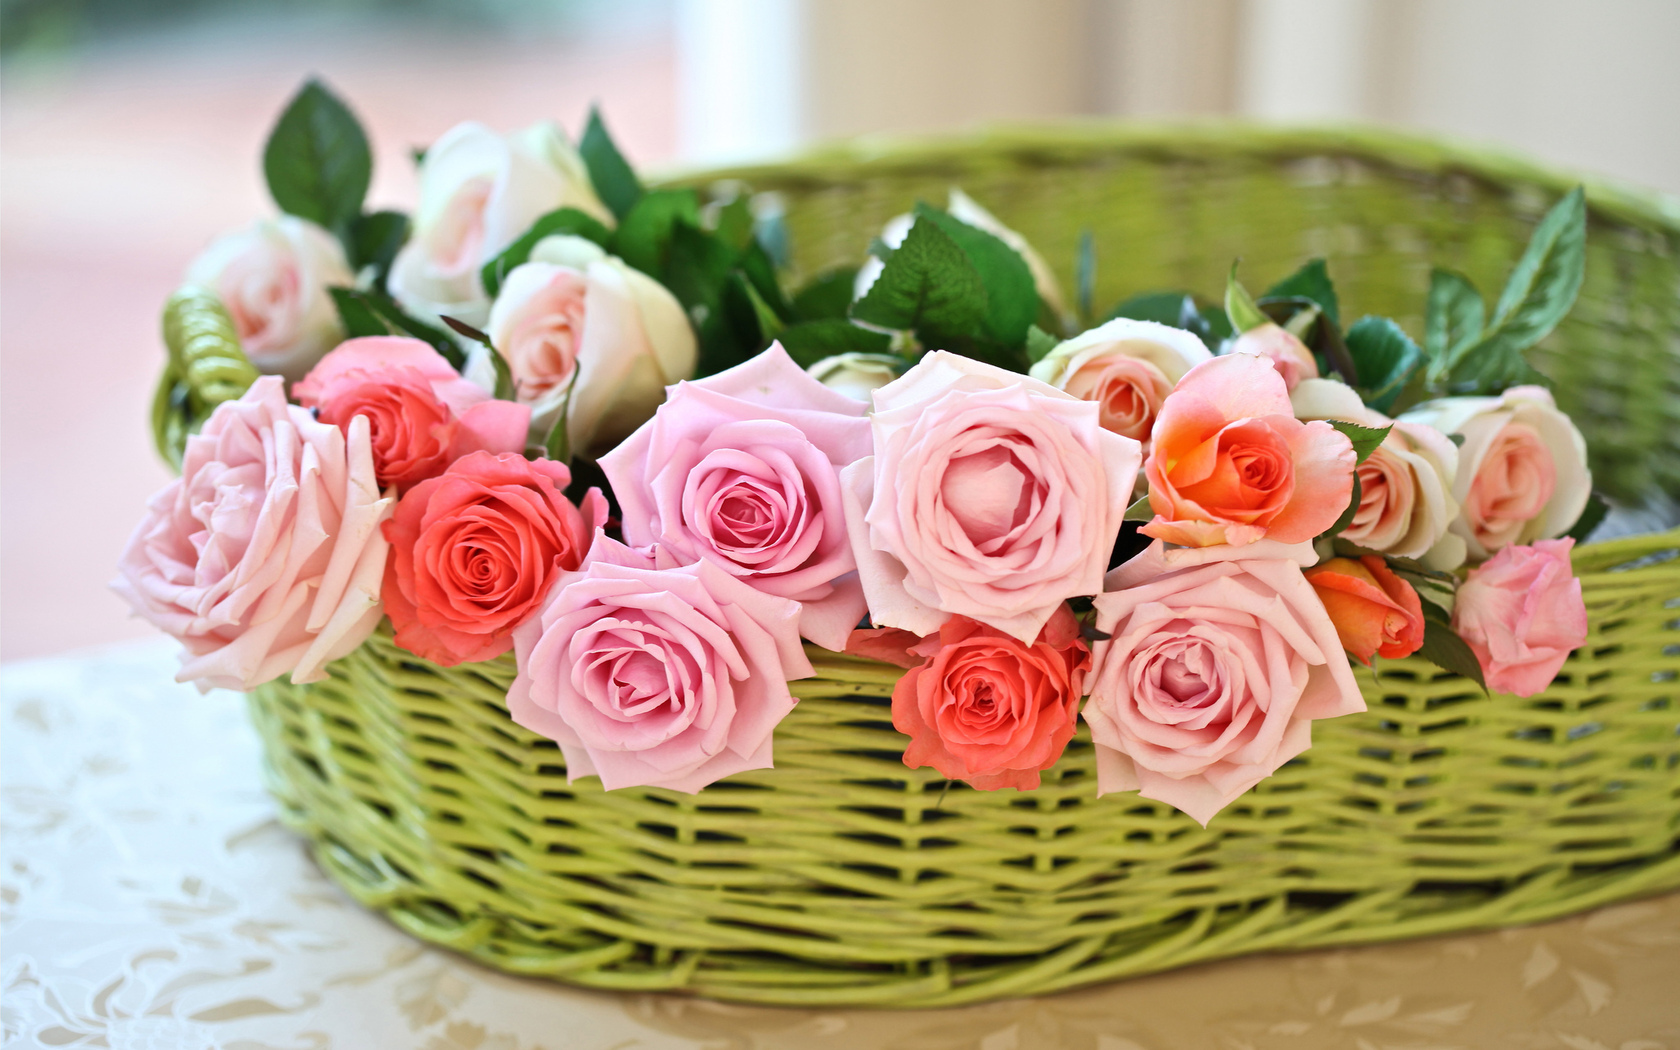  Цветы розы, бутоны, корзина картинка, обои рабочий стол